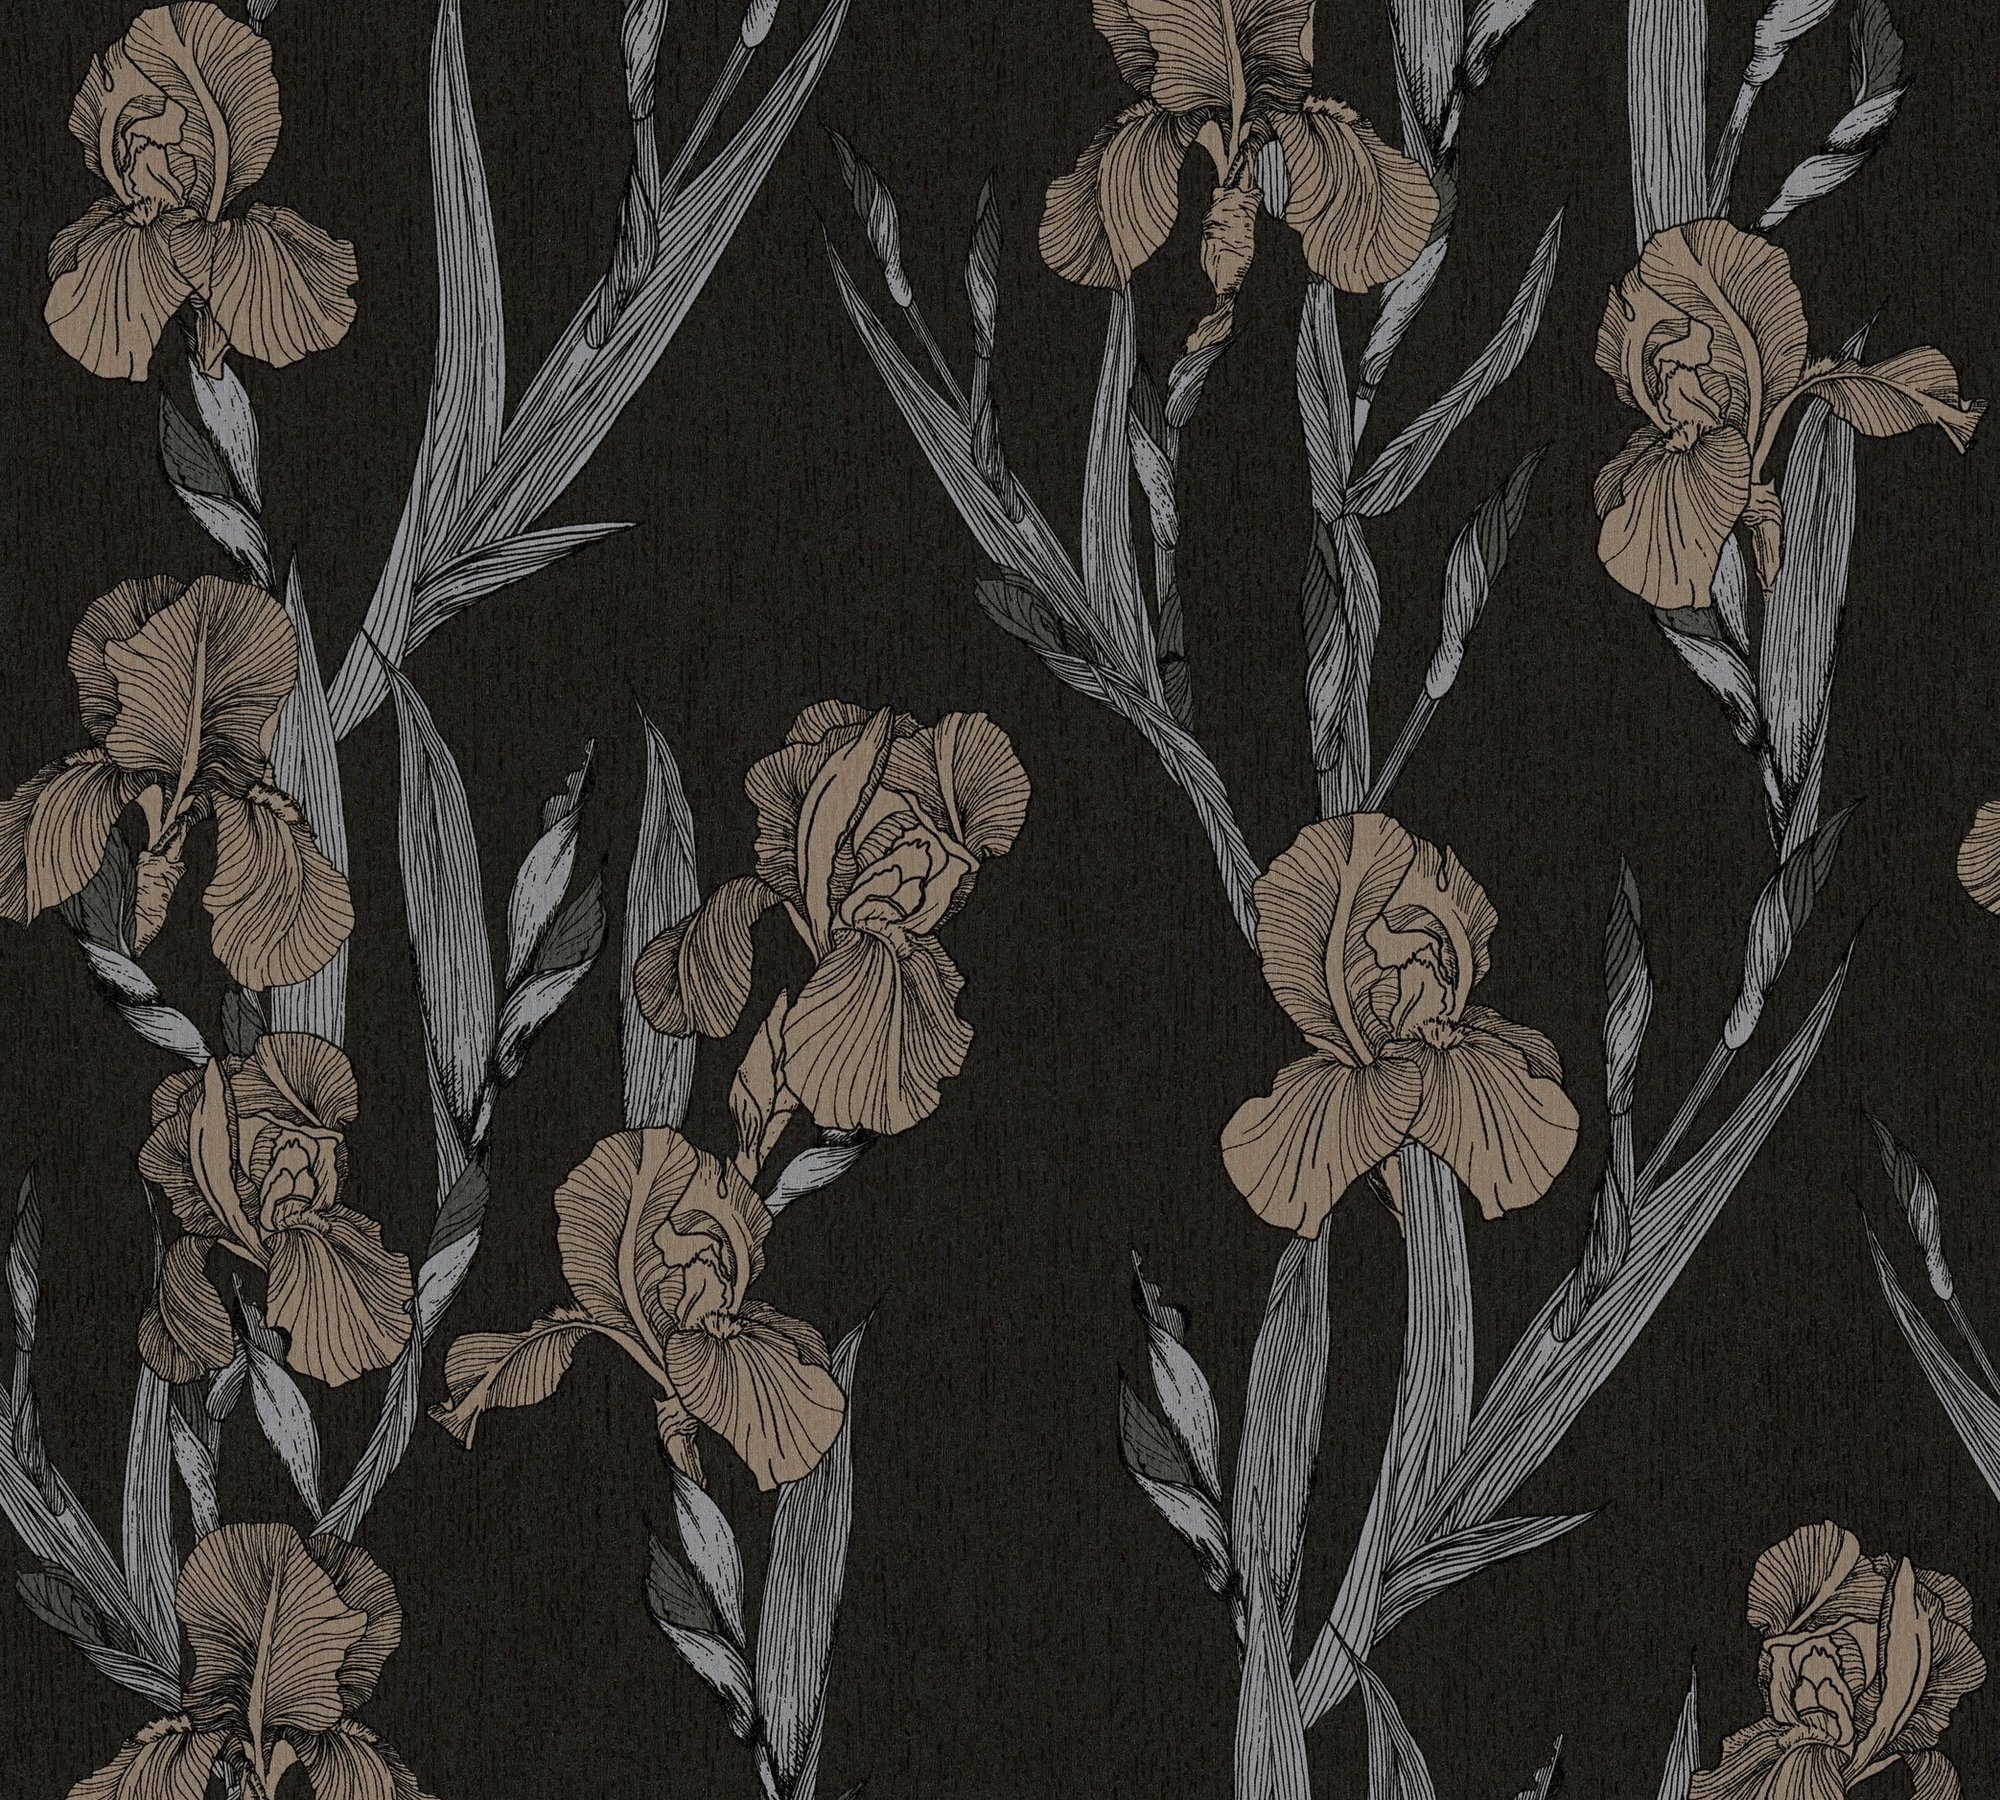 botanisch, Daniel Blumen Vliestapete, floral, schwarz/grau/braun Hechter Tapete Designertapete